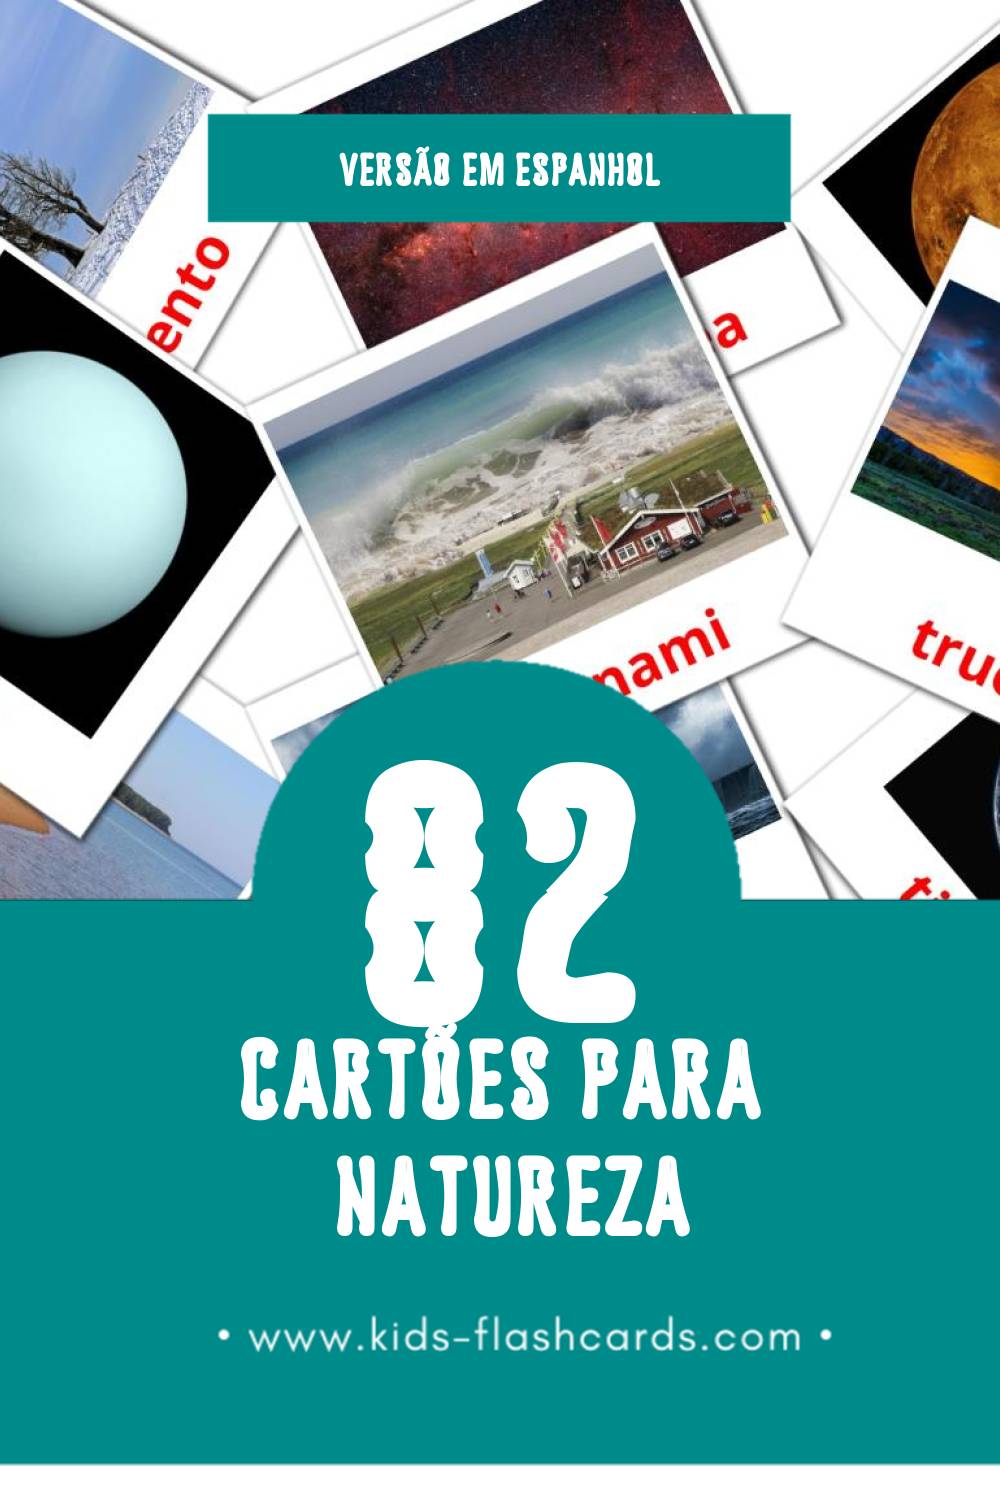 Flashcards de Naturaleza Visuais para Toddlers (82 cartões em Espanhol)